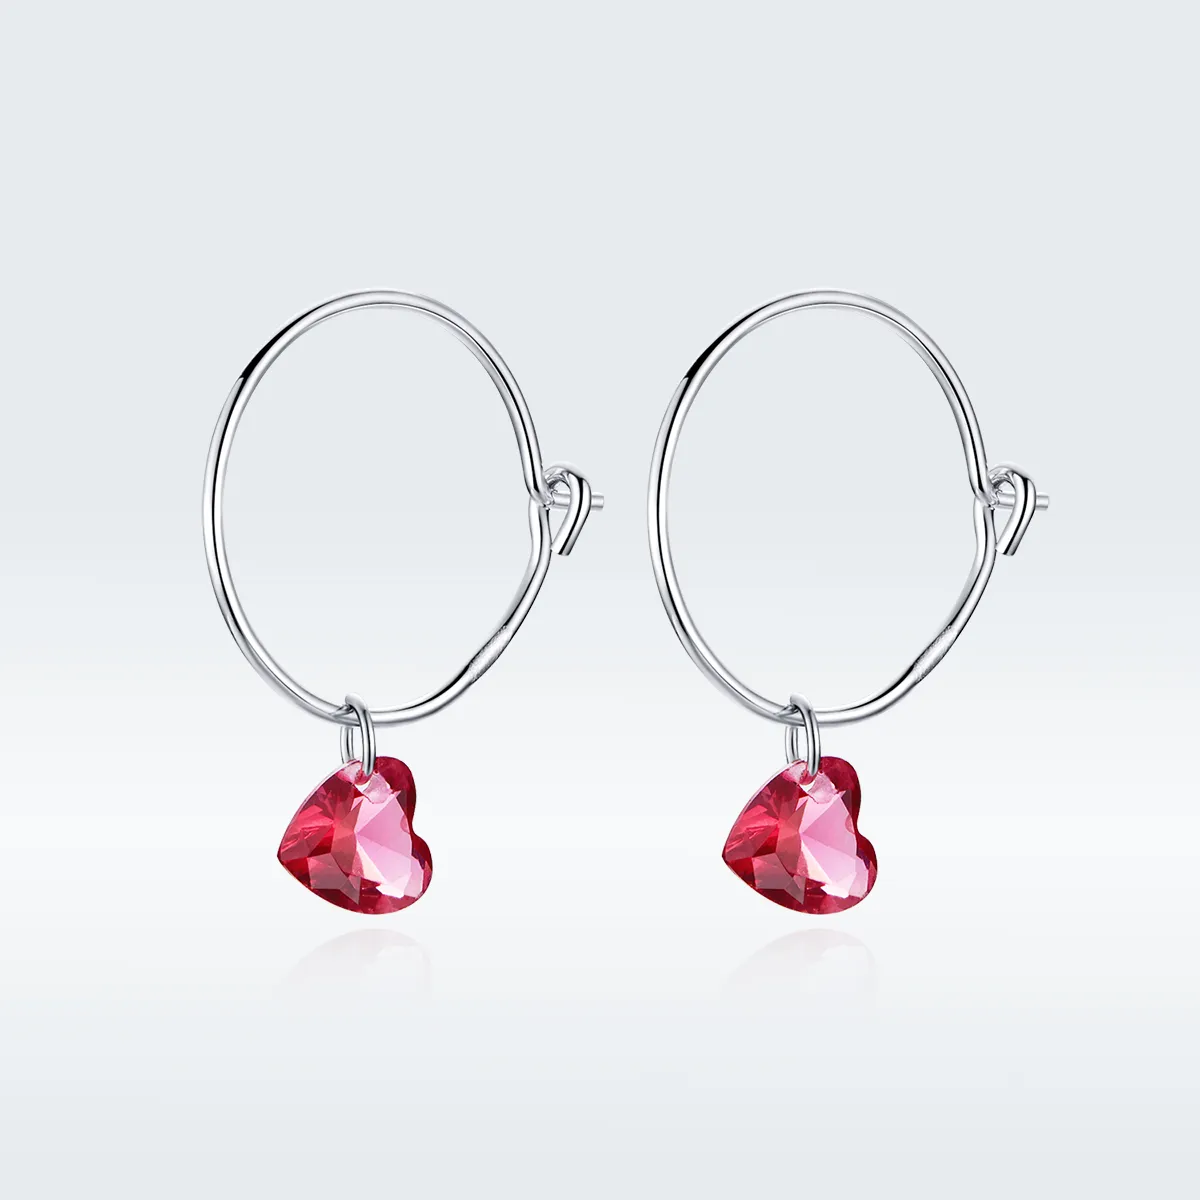 Pandora Style Silver Heart Dangle Earrings - BSE317